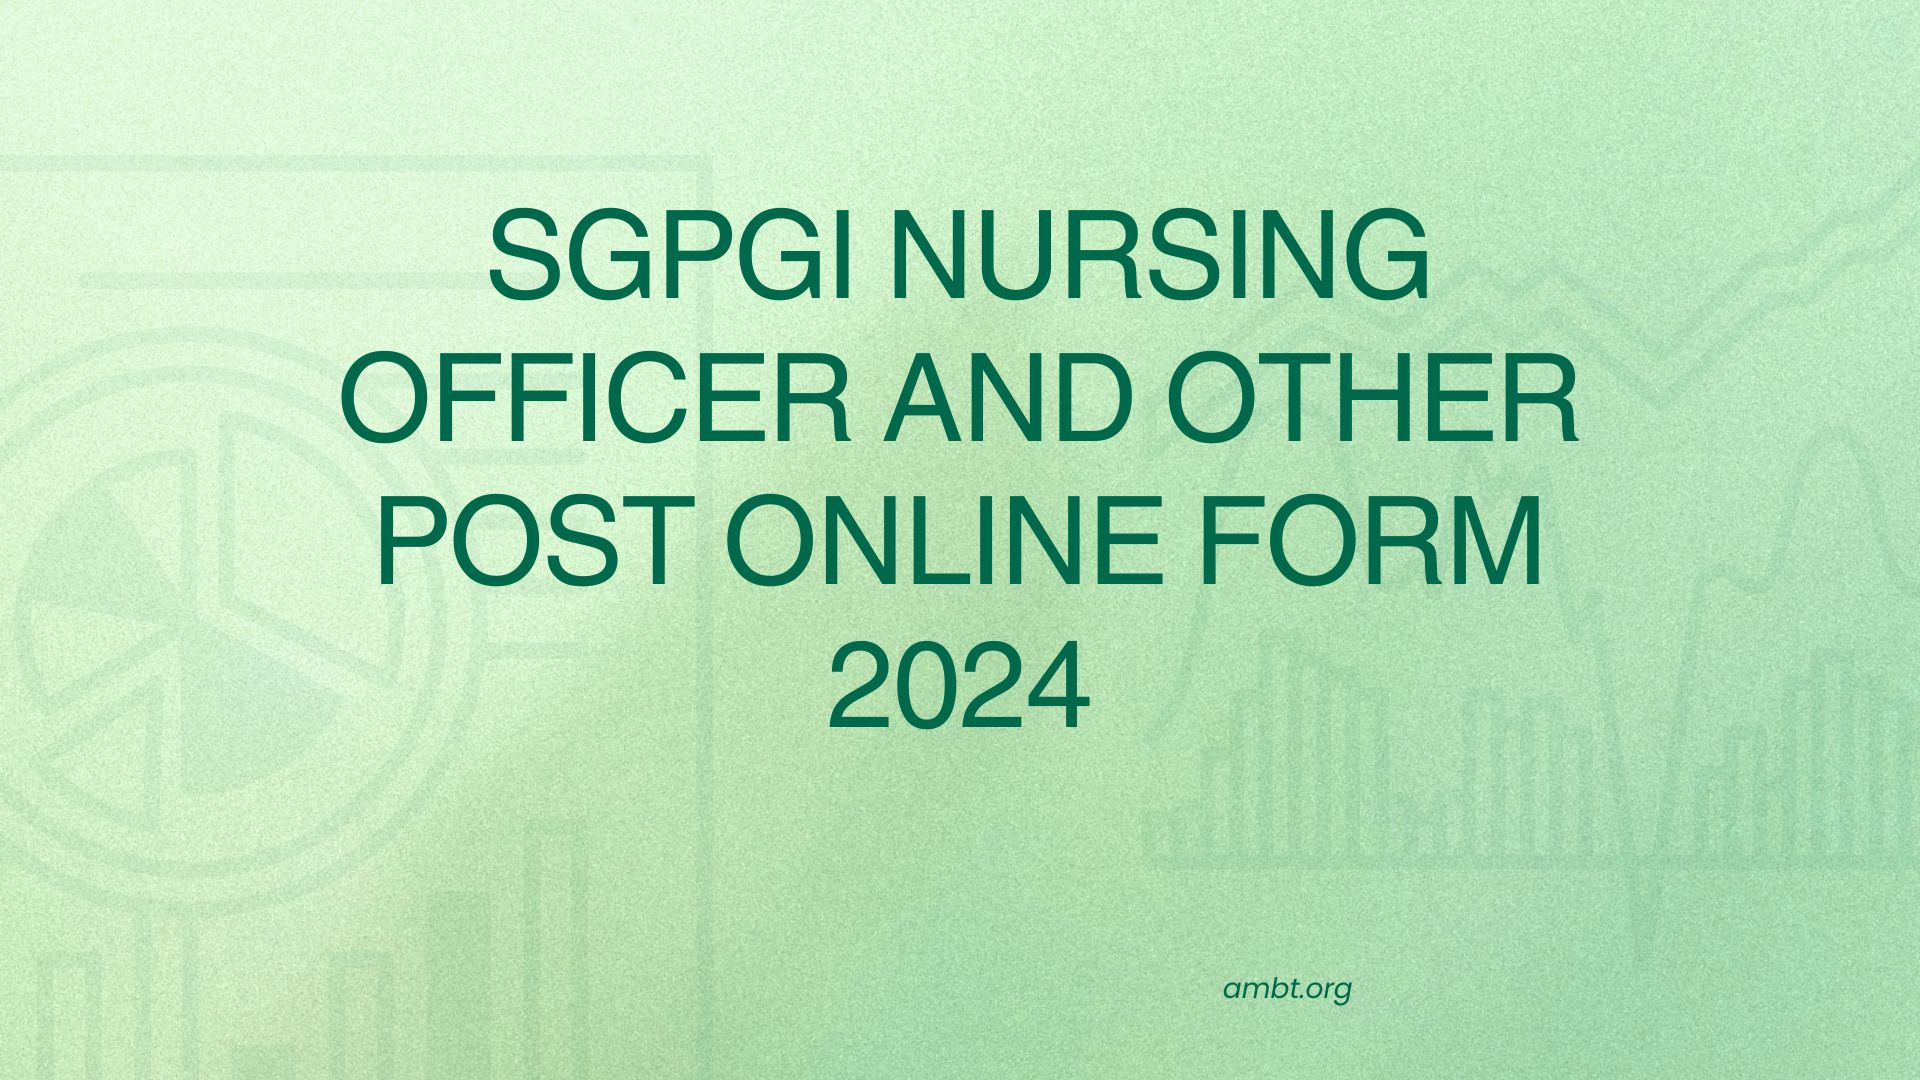 SGPGI Nursing Officer and Other Post Online Form 2024